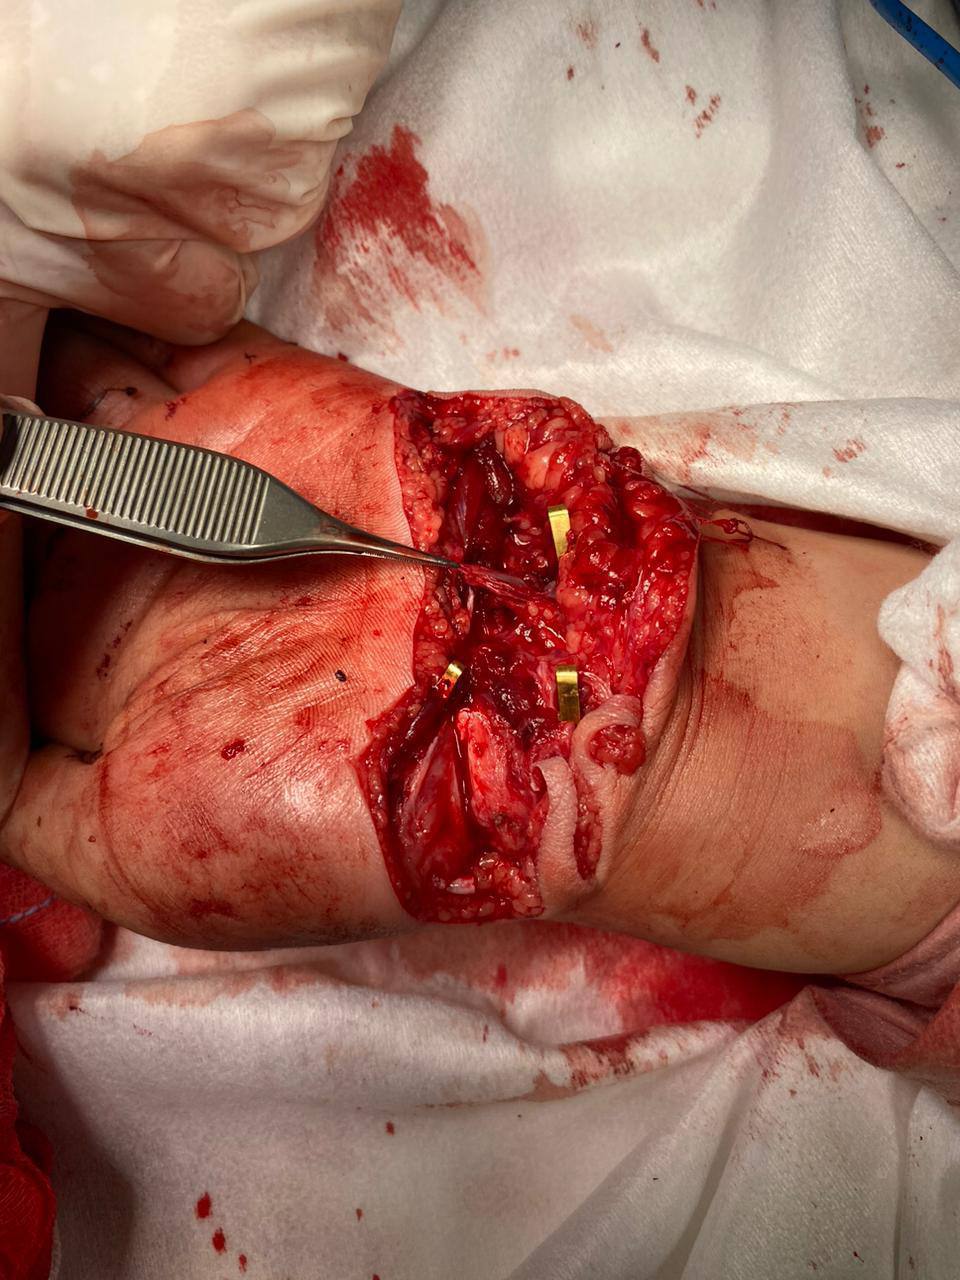 Микрохирурги Педиатрического университета 10 часов оперировали ребёнка, рука которого попала в блендер 2